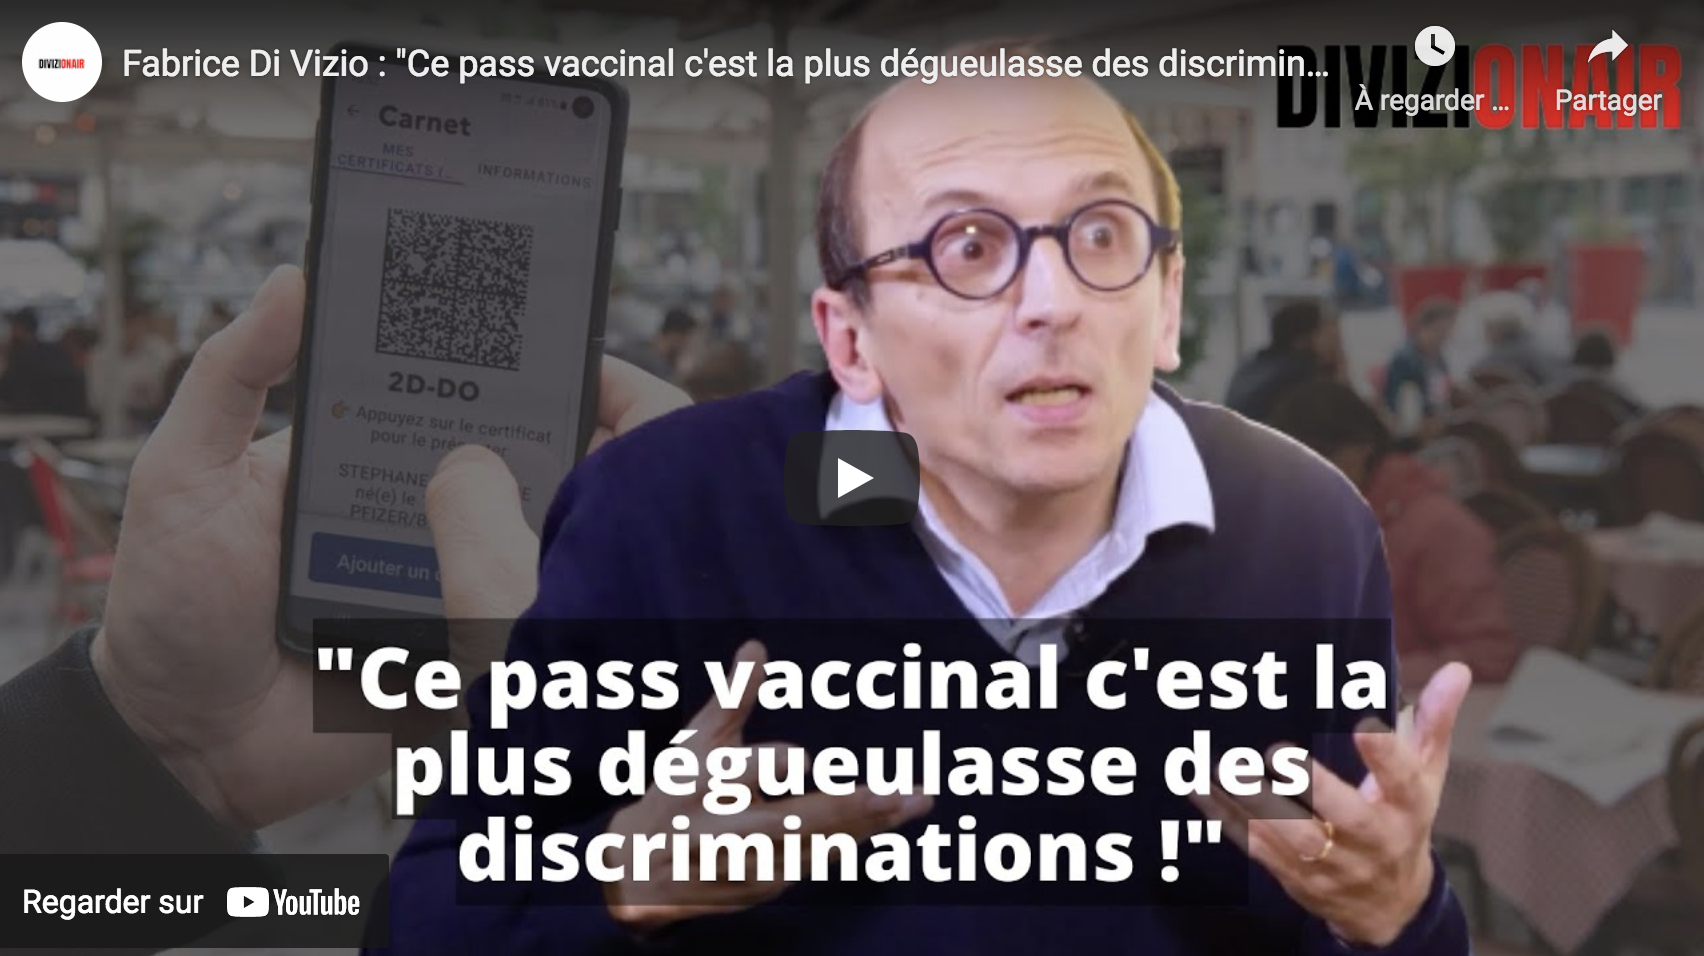 Fabrice Di Vizio : “Ce pass vaccinal, c’est la plus dégueulasse des discriminations !” (VIDÉO)